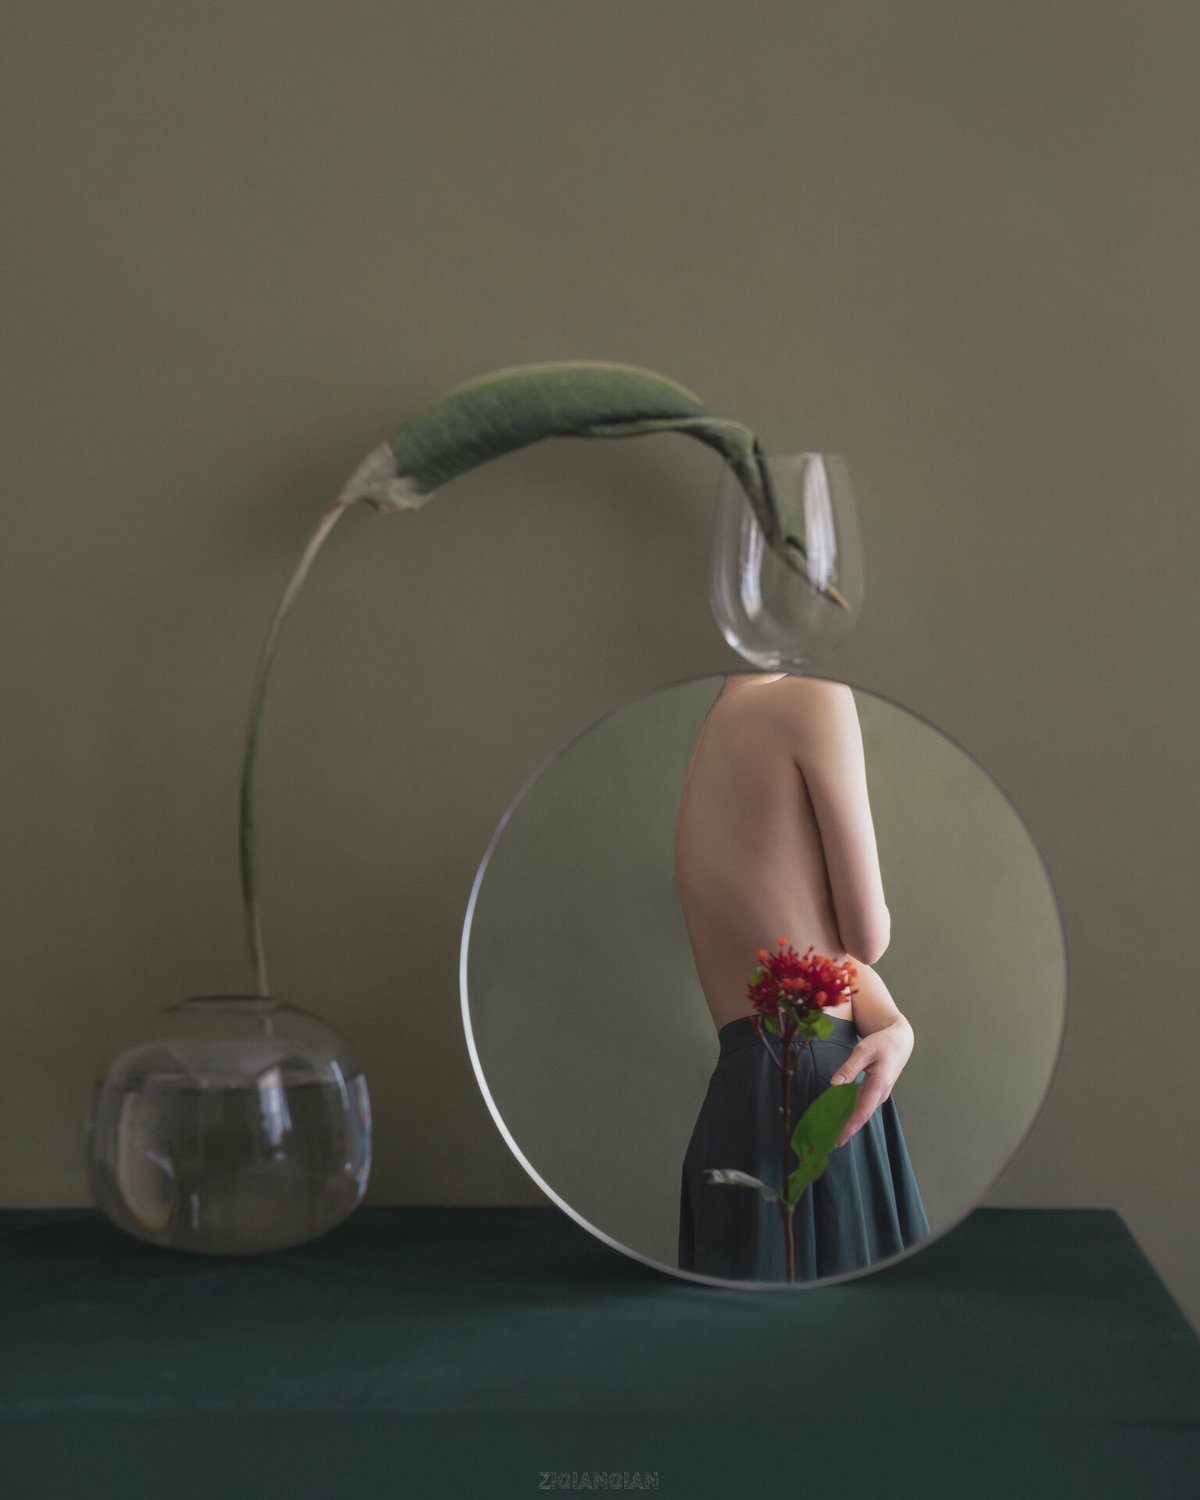 Reflection 2 by Ziqian Liu